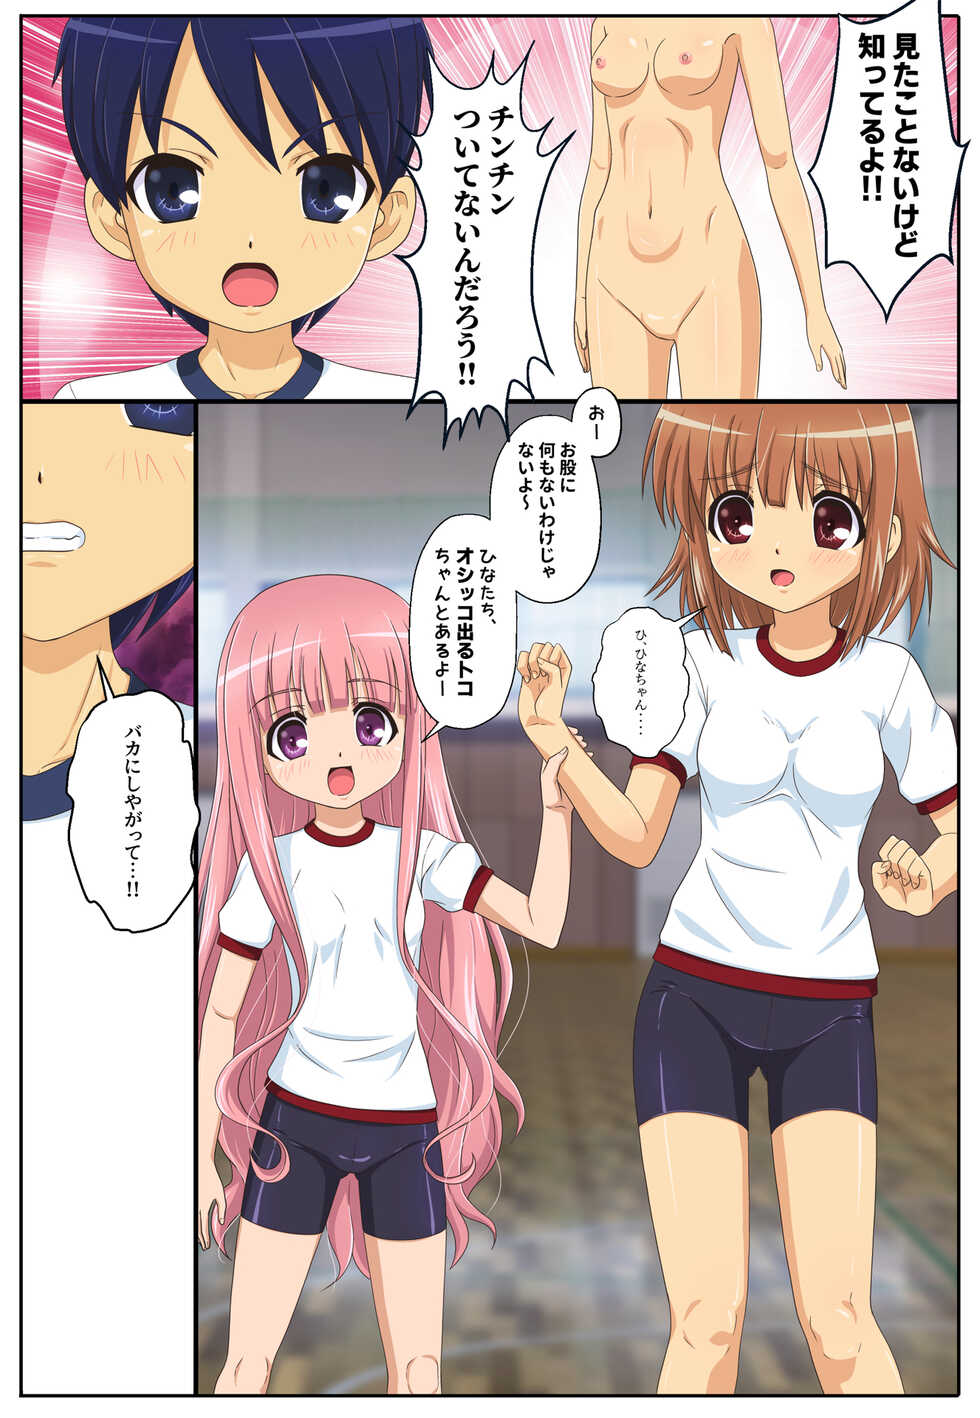 [Shinenkan (Toki)] Classmate o Mannequin ni Shite Asoko ga Dou natte iru no ka Tashikamete mita (Ro-Kyu-Bu!) - Page 2